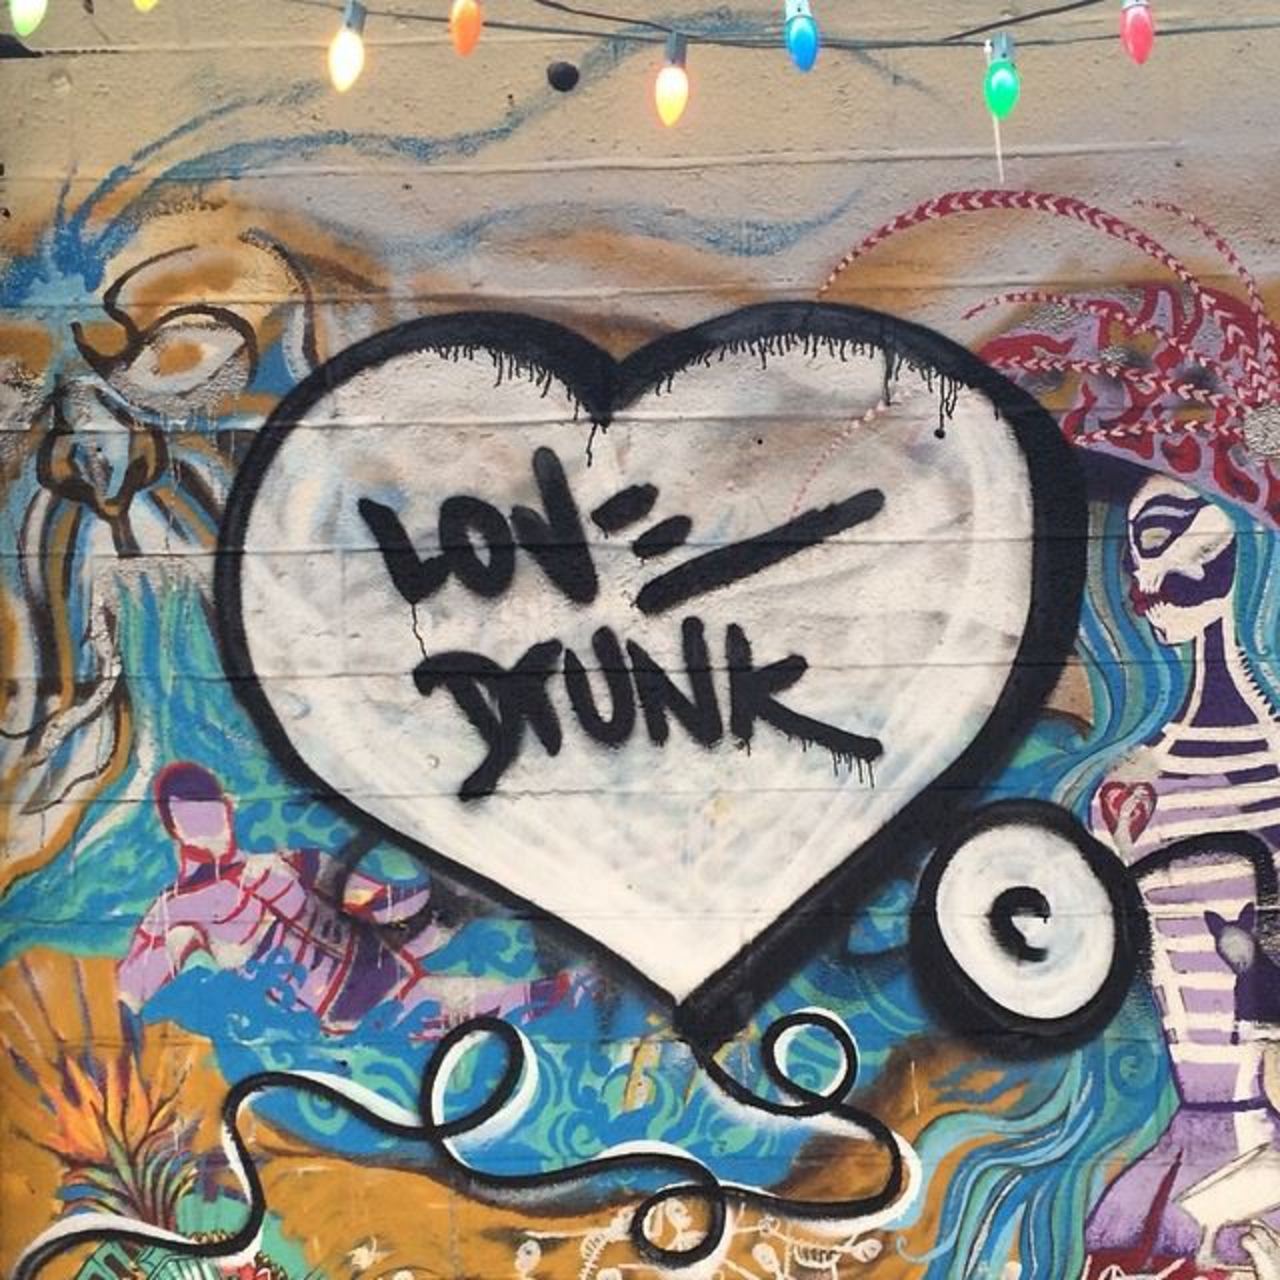 Love Drunk.
#artecollective #streetart #newyork #graffiti #art #life #love #drunk #mural http://t.co/CvxSCaSBng